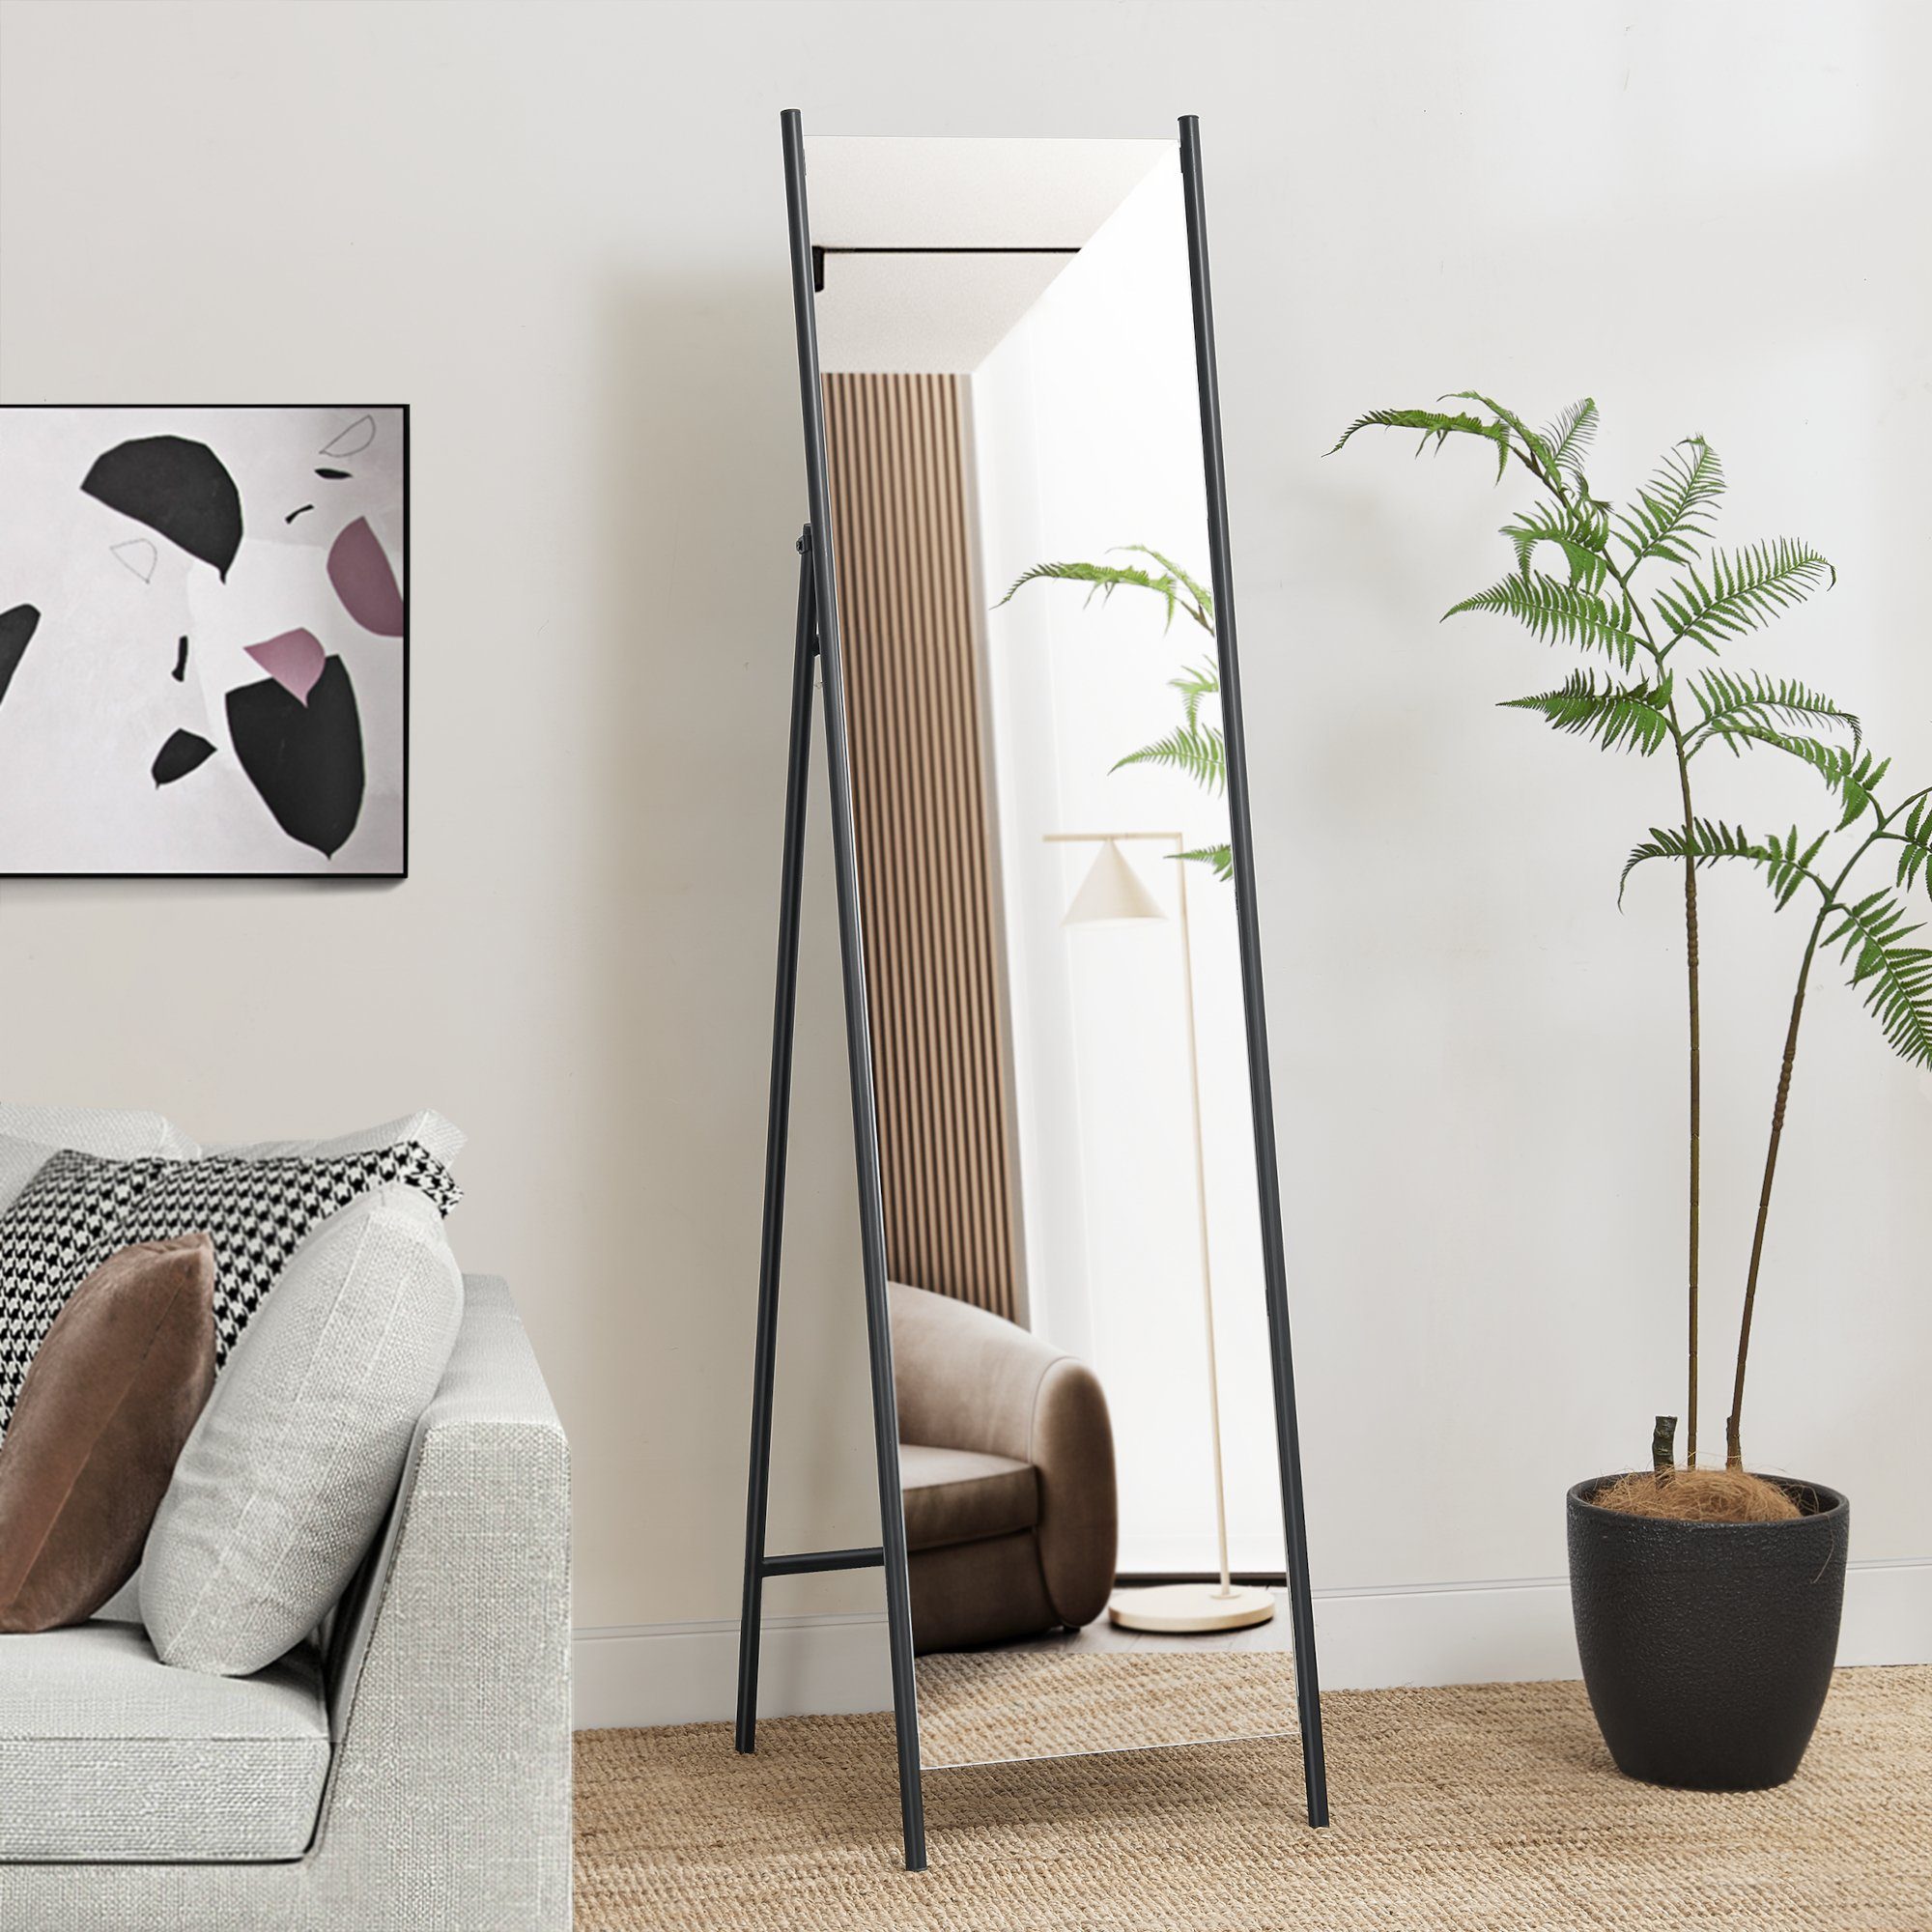 160 cm Spiegel online kaufen | OTTO